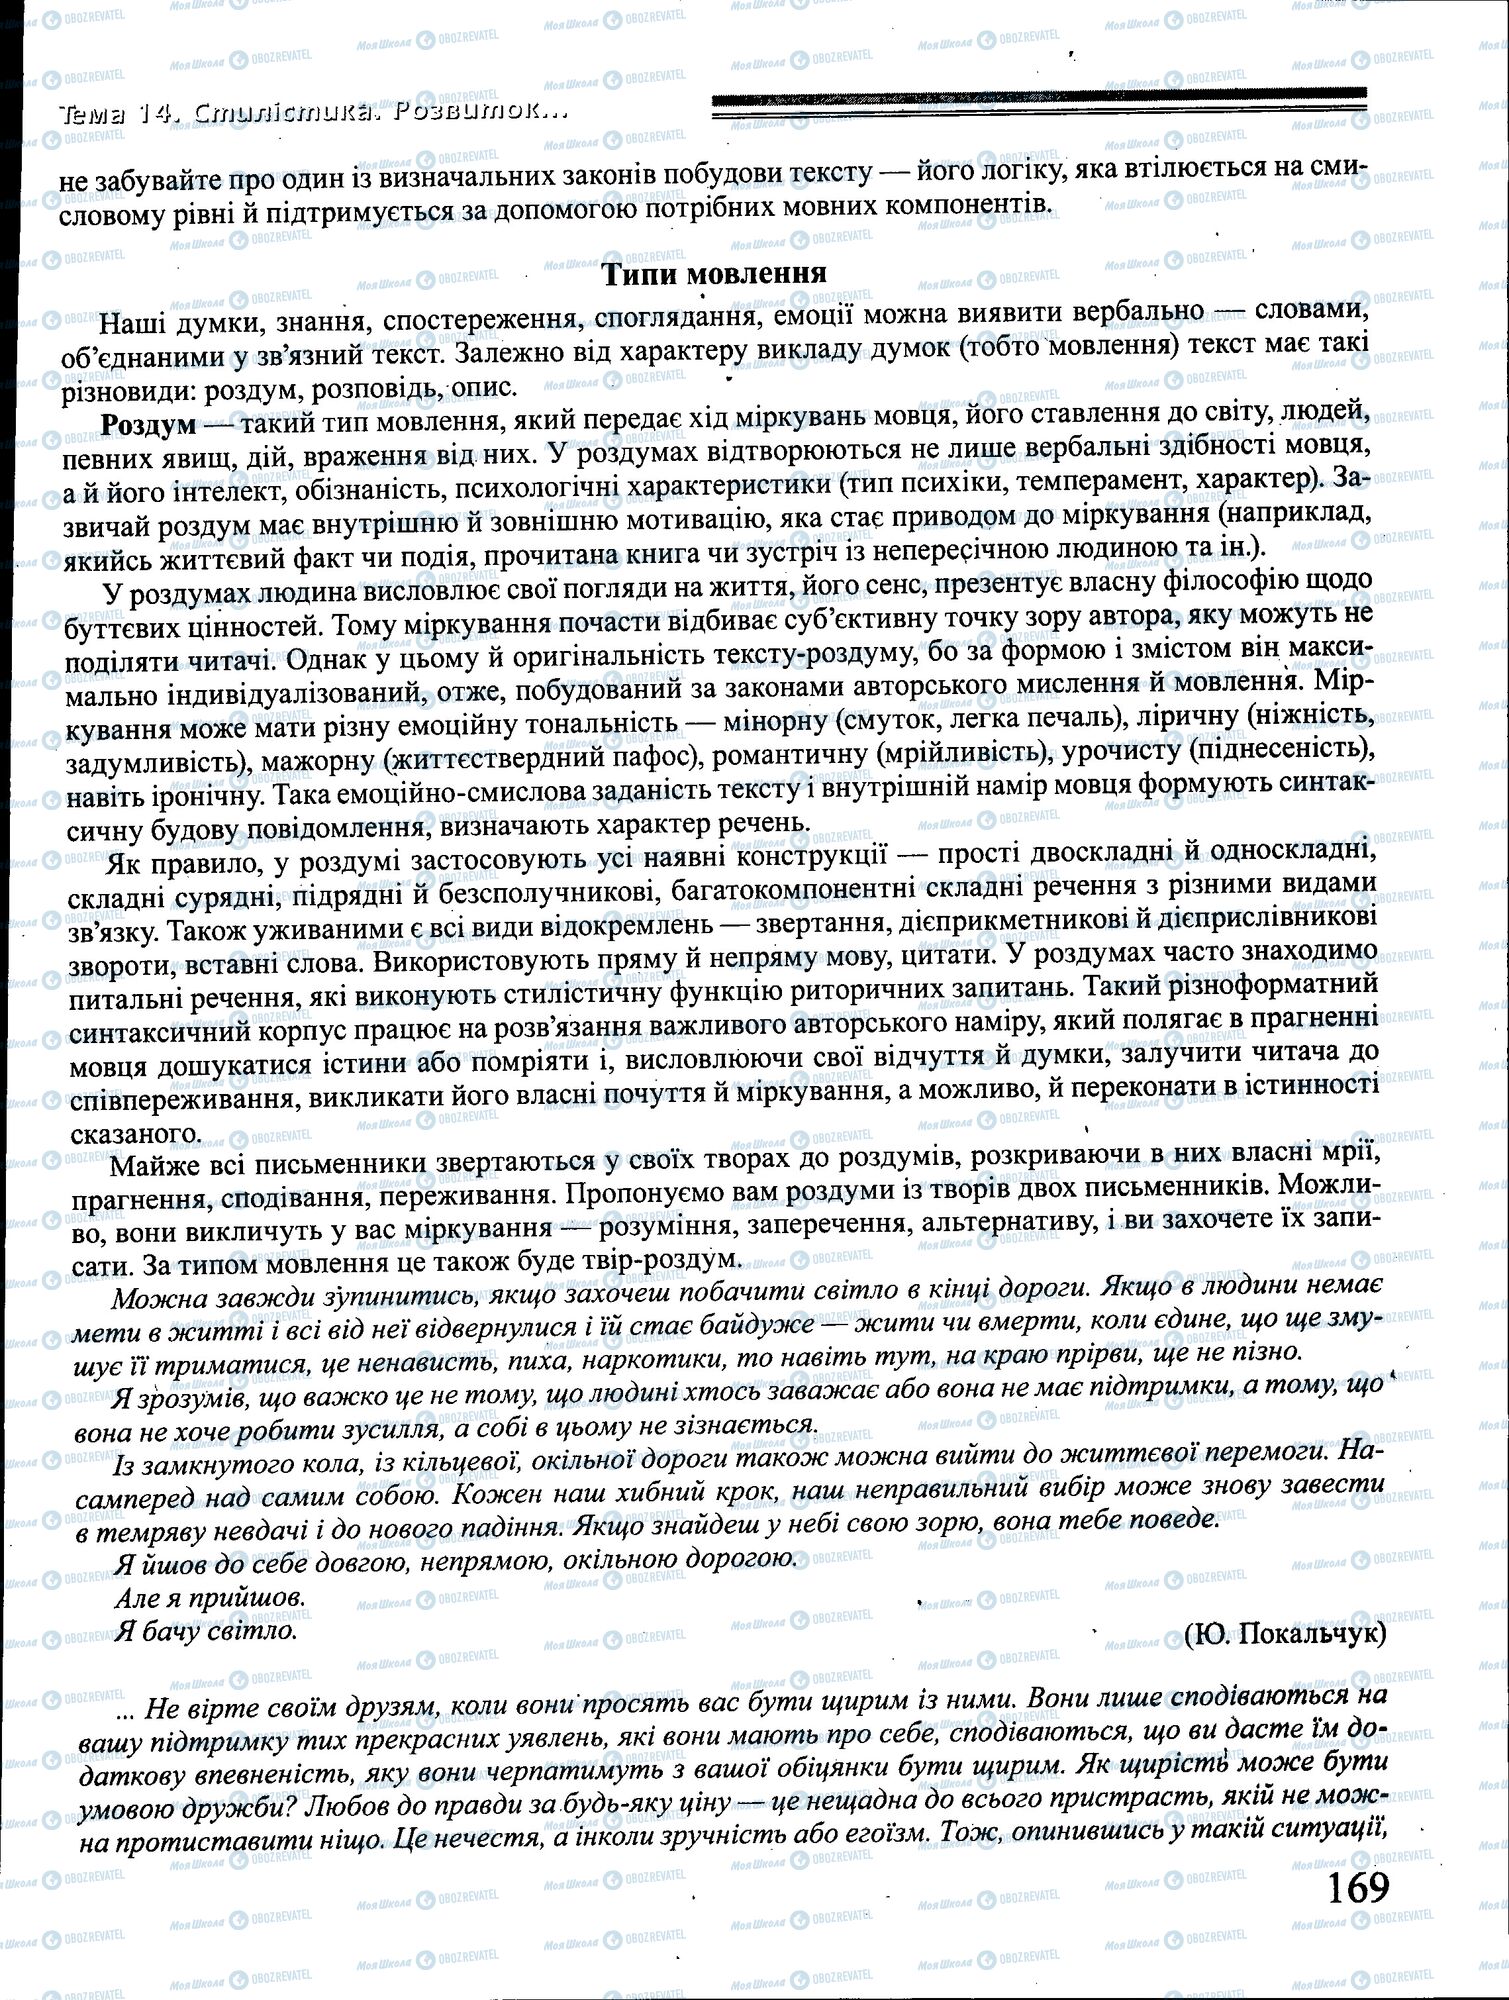 ДПА Укр мова 4 класс страница 169